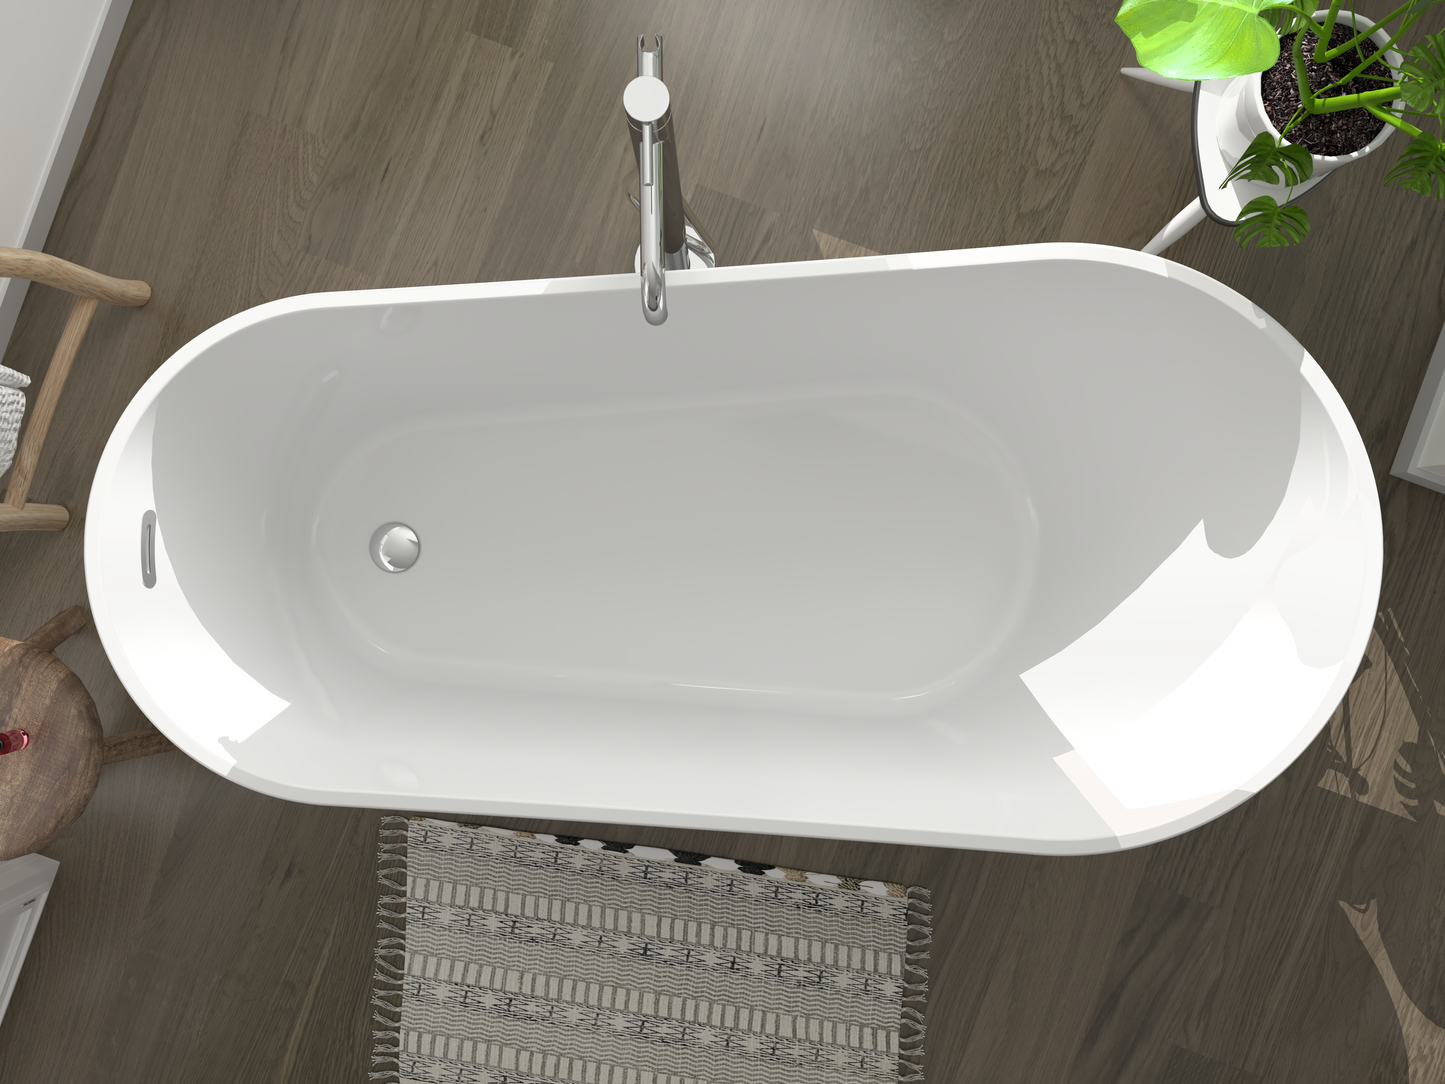 Freistehende Badewanne VITO - Acryl weiß glänzend, Länge 1700mm